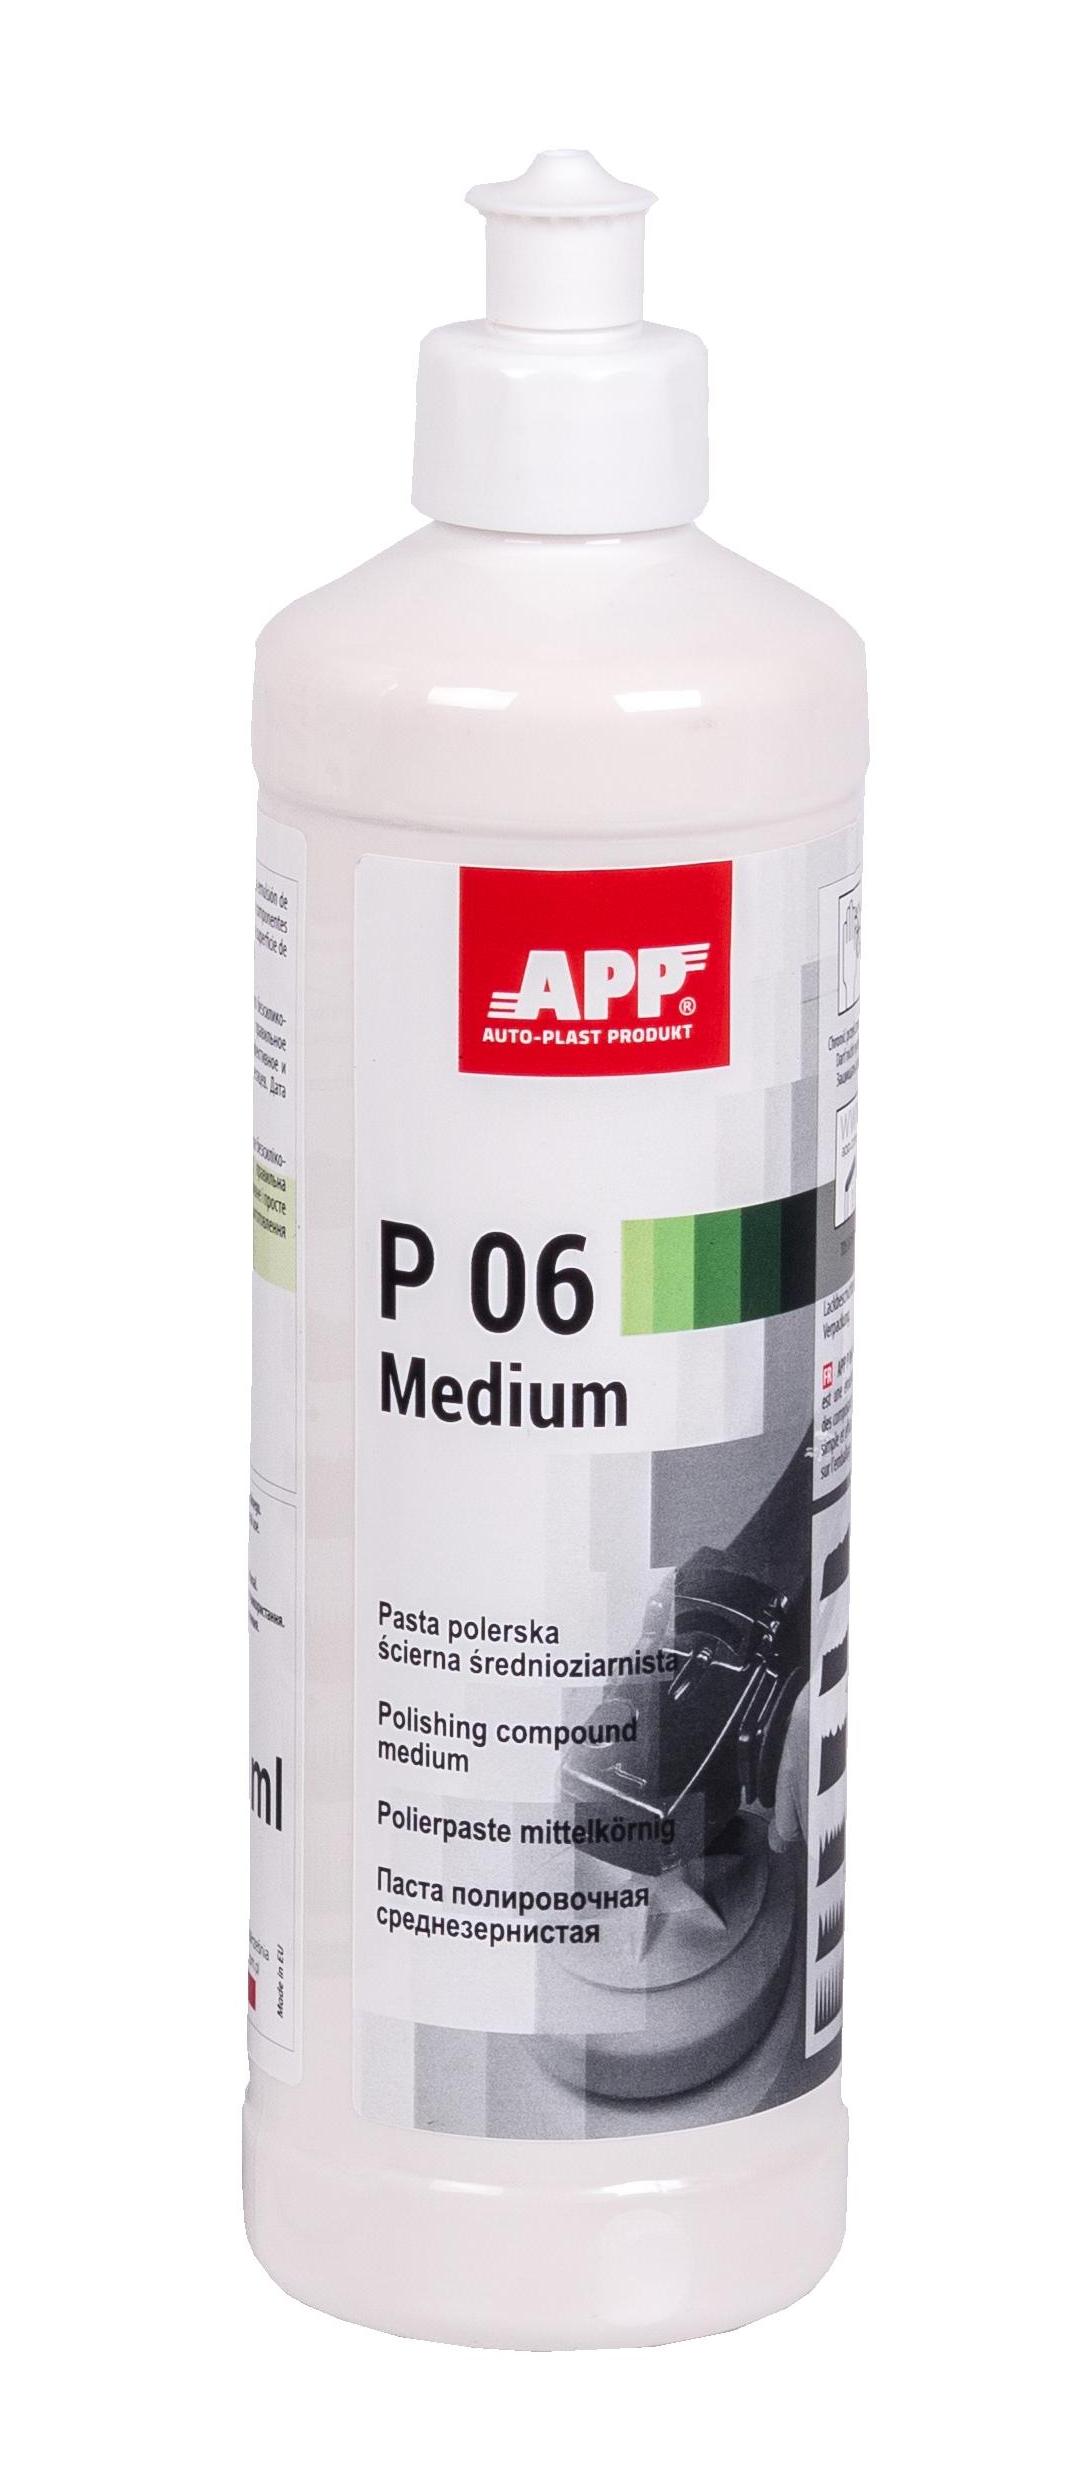 APP 081310 Medium Duty Compound - P06 Polierpaste Politur mittelkörnig 500ml | Schleifpaste polieren Paste Autolack mittel